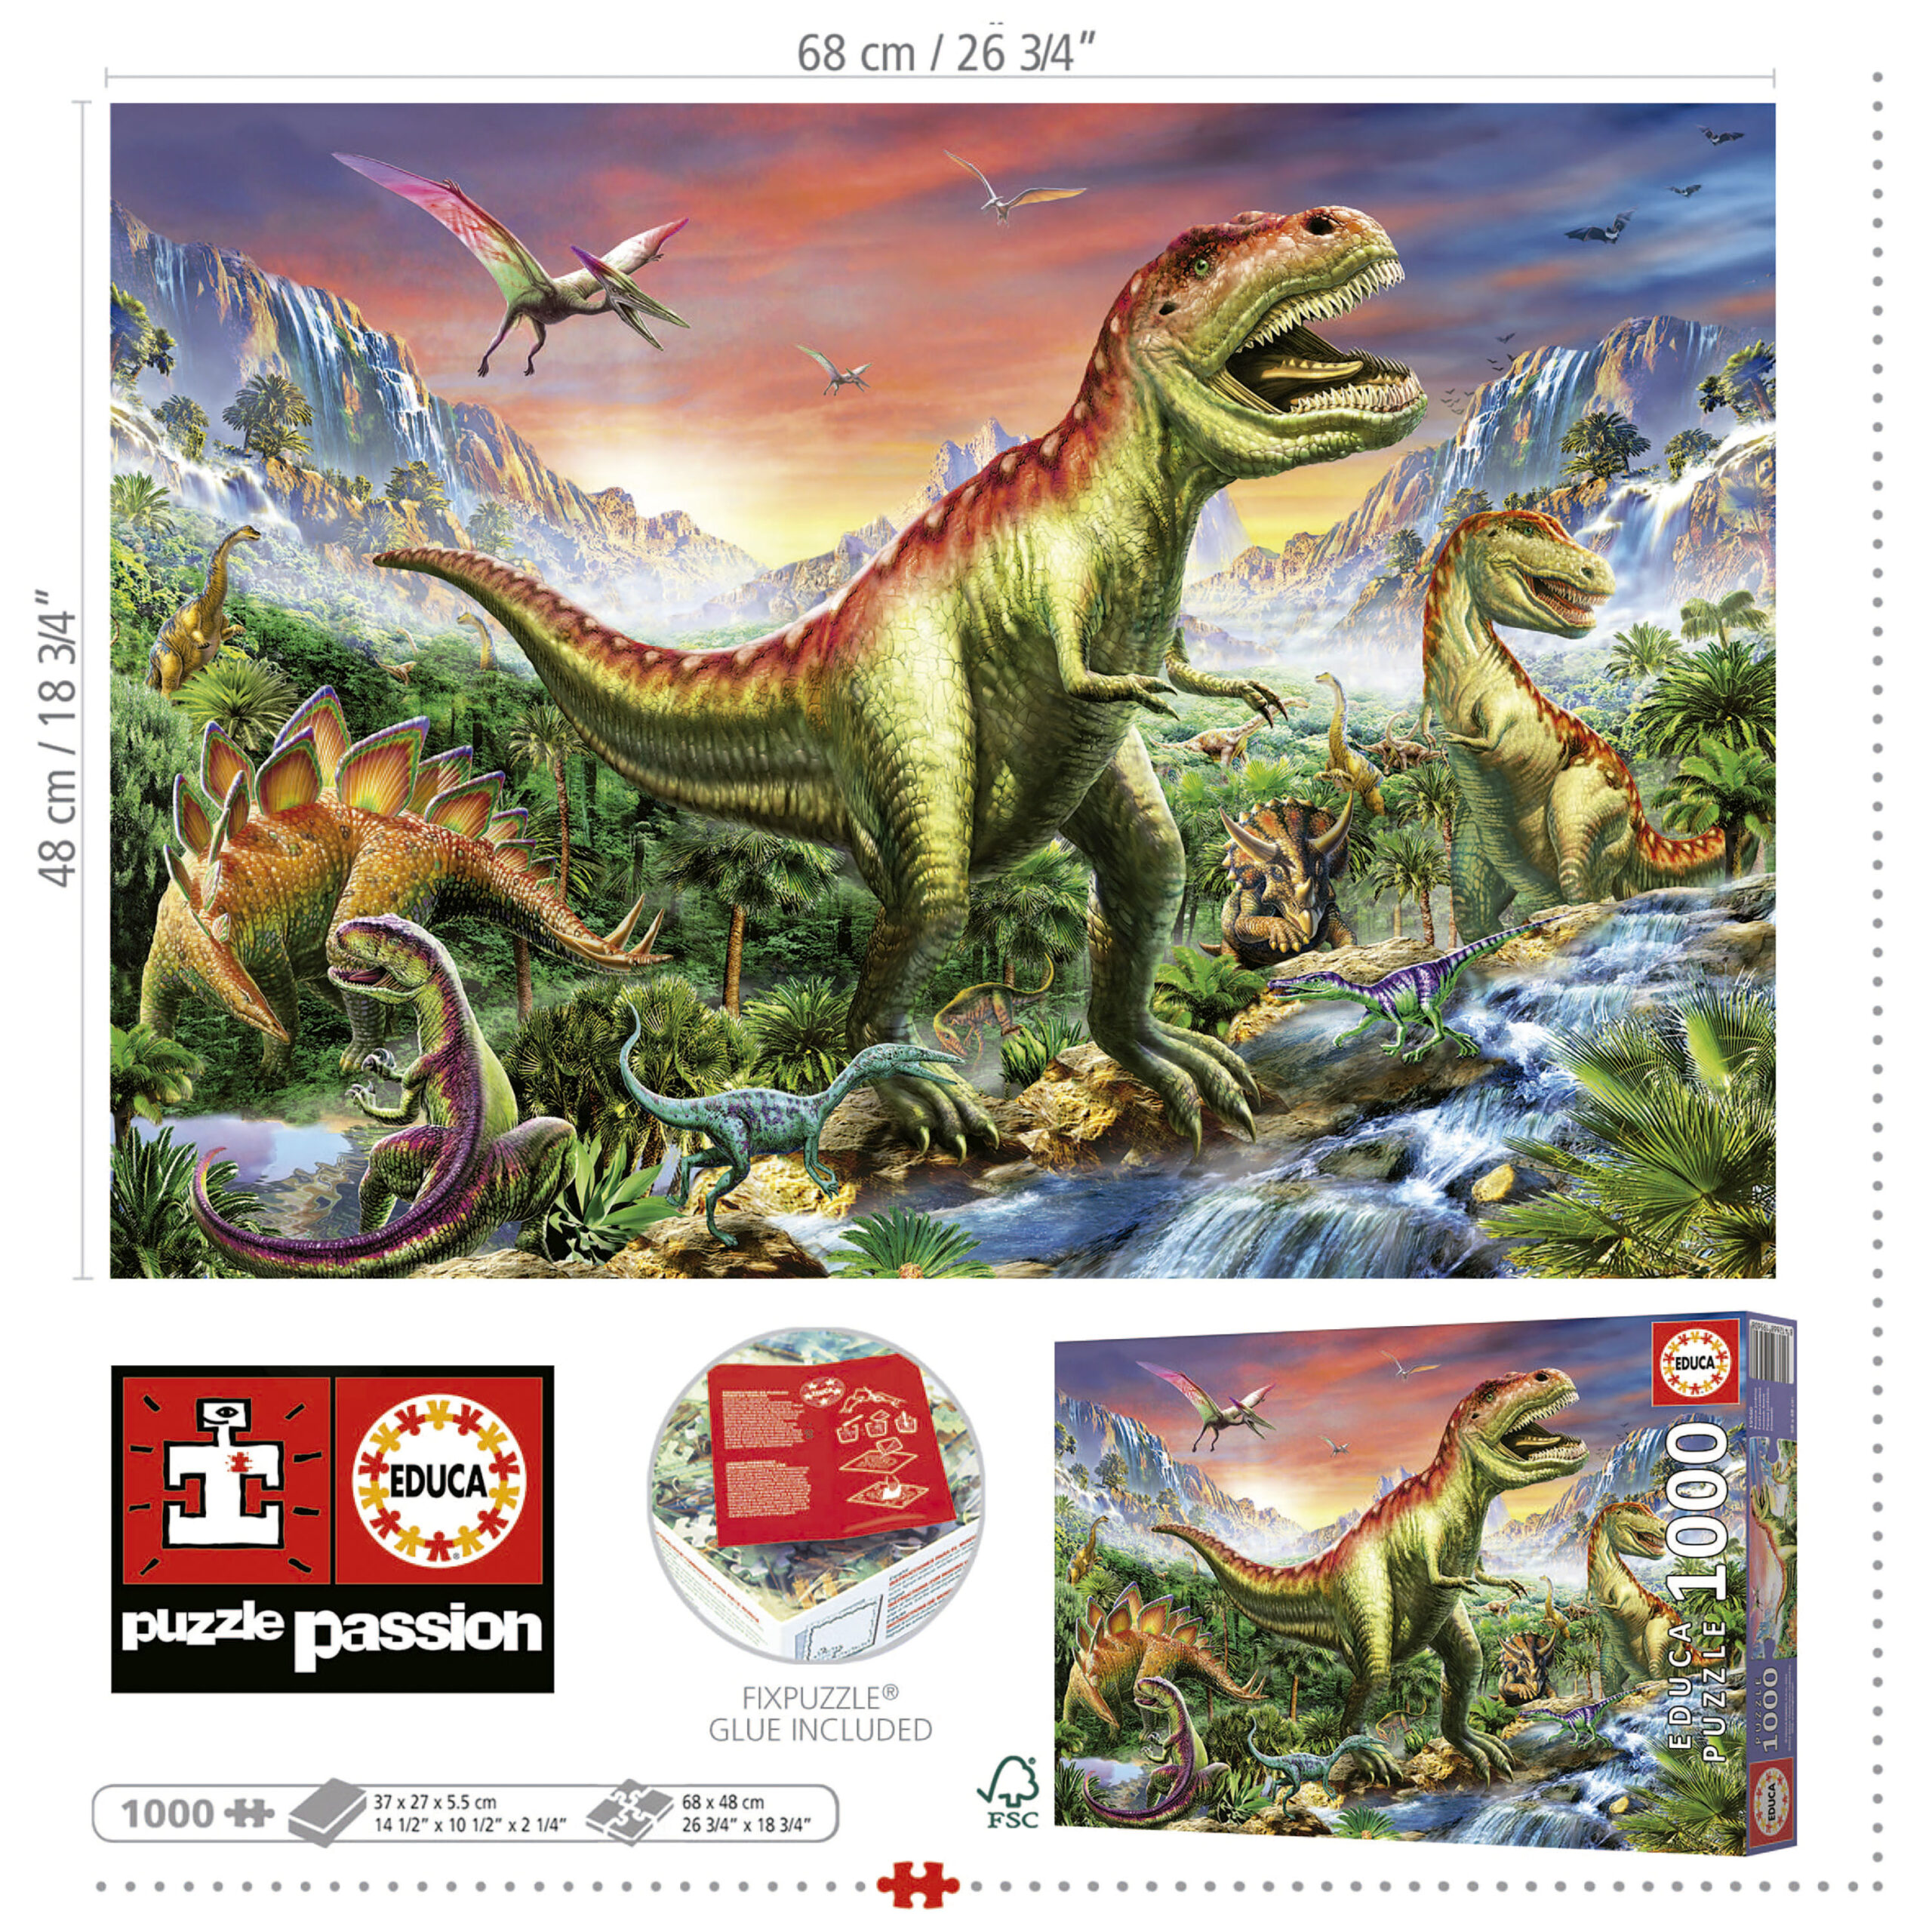  Educa Children's 2000 Mount Fuji Japan Puzzle : Toys & Games